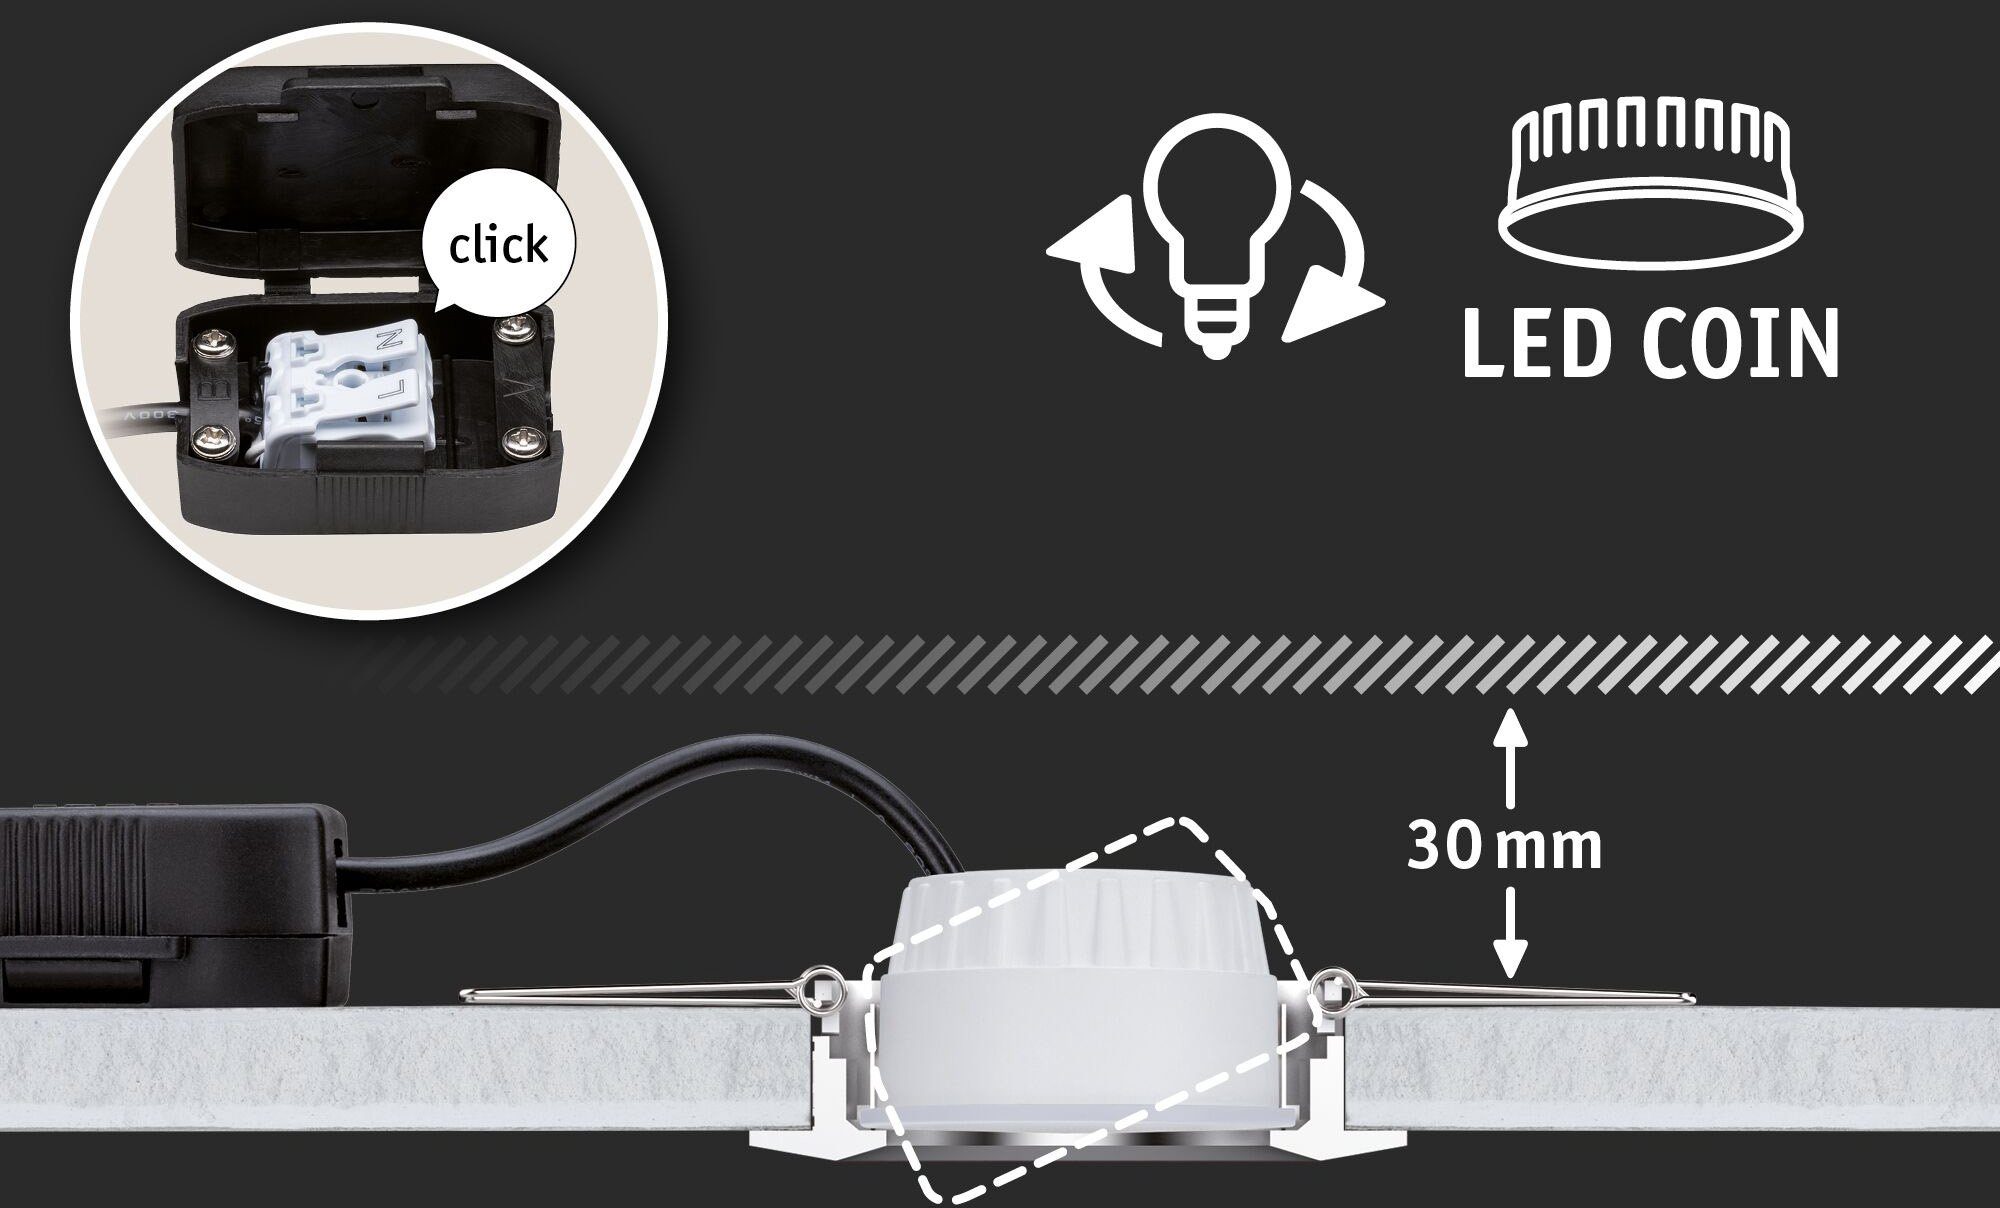 Paulmann LED wechselbar, 3er Einbauleuchte Helligkeitsstufen, LED Deckenspots, Set Cole, Warmweiß, mehrere